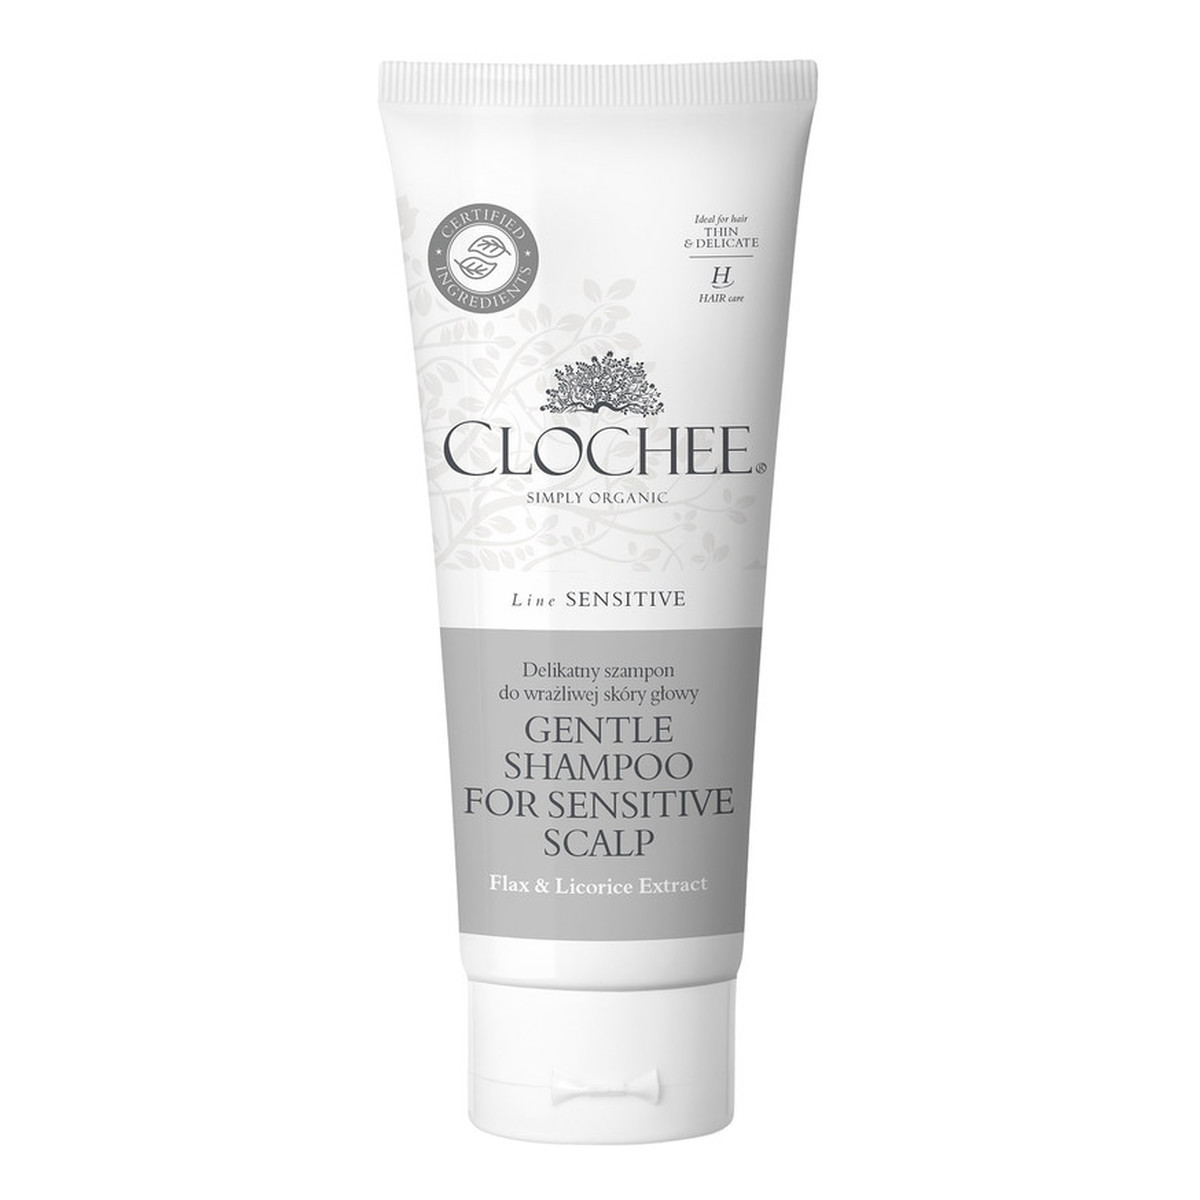 Clochee Delikatny szampon do wrażliwej skóry głowy 200ml